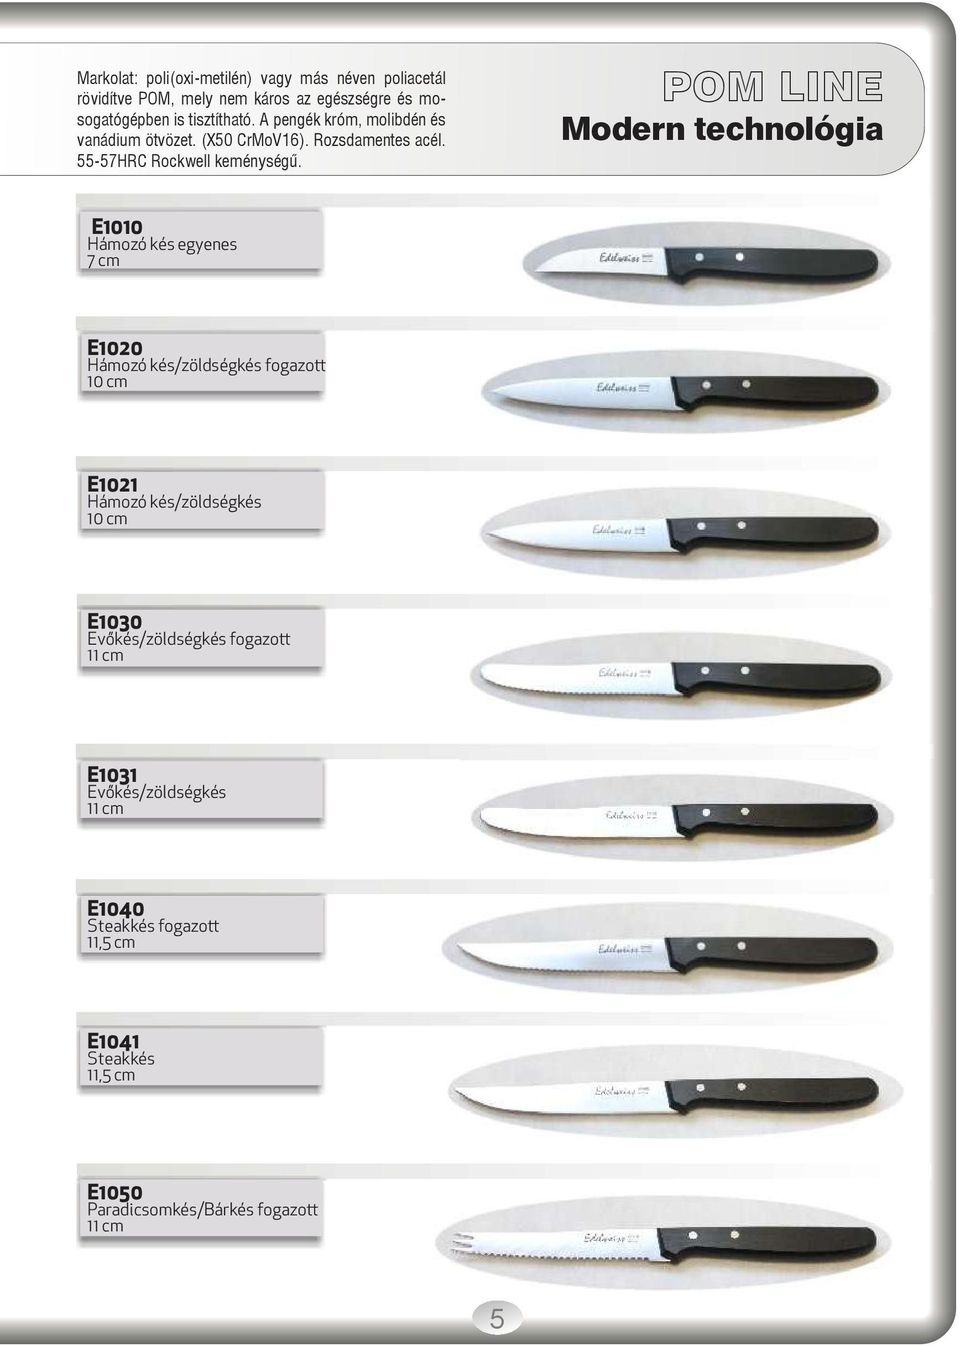 POM LINE Modern technológia E1010 Hámozó kés egyenes 7 cm E1020 Hámozó kés/zöldségkés fogazott 10 cm E1021 Hámozó kés/zöldségkés 10 cm